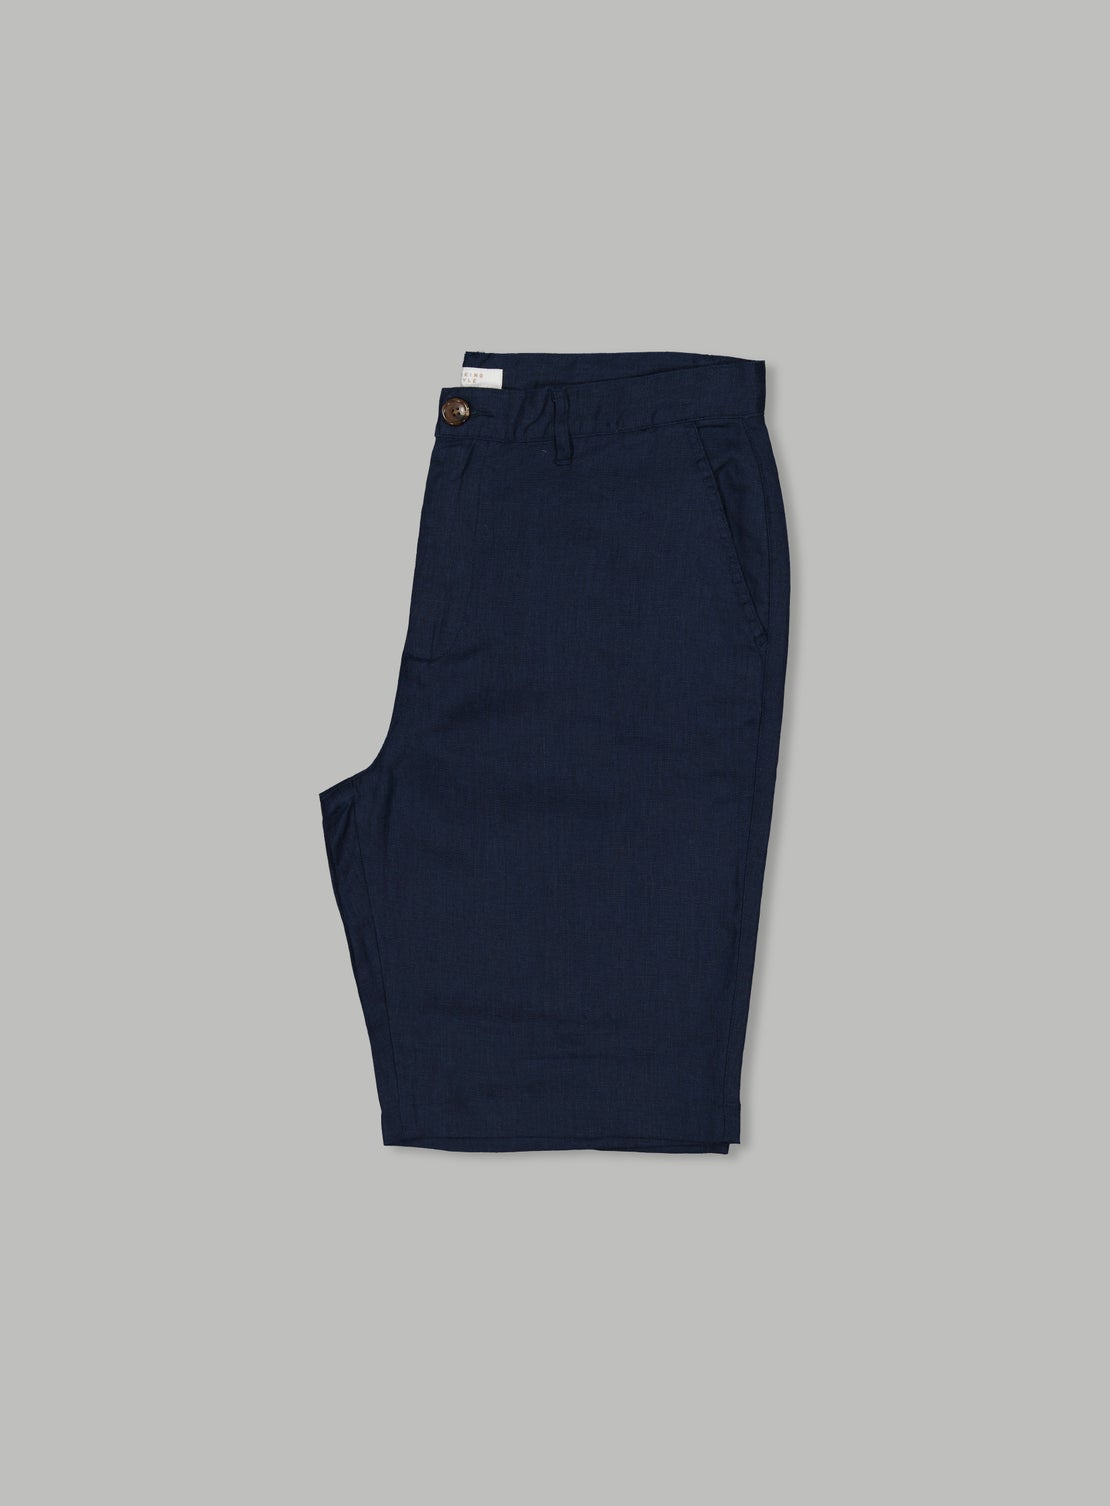 Navy Linen Short